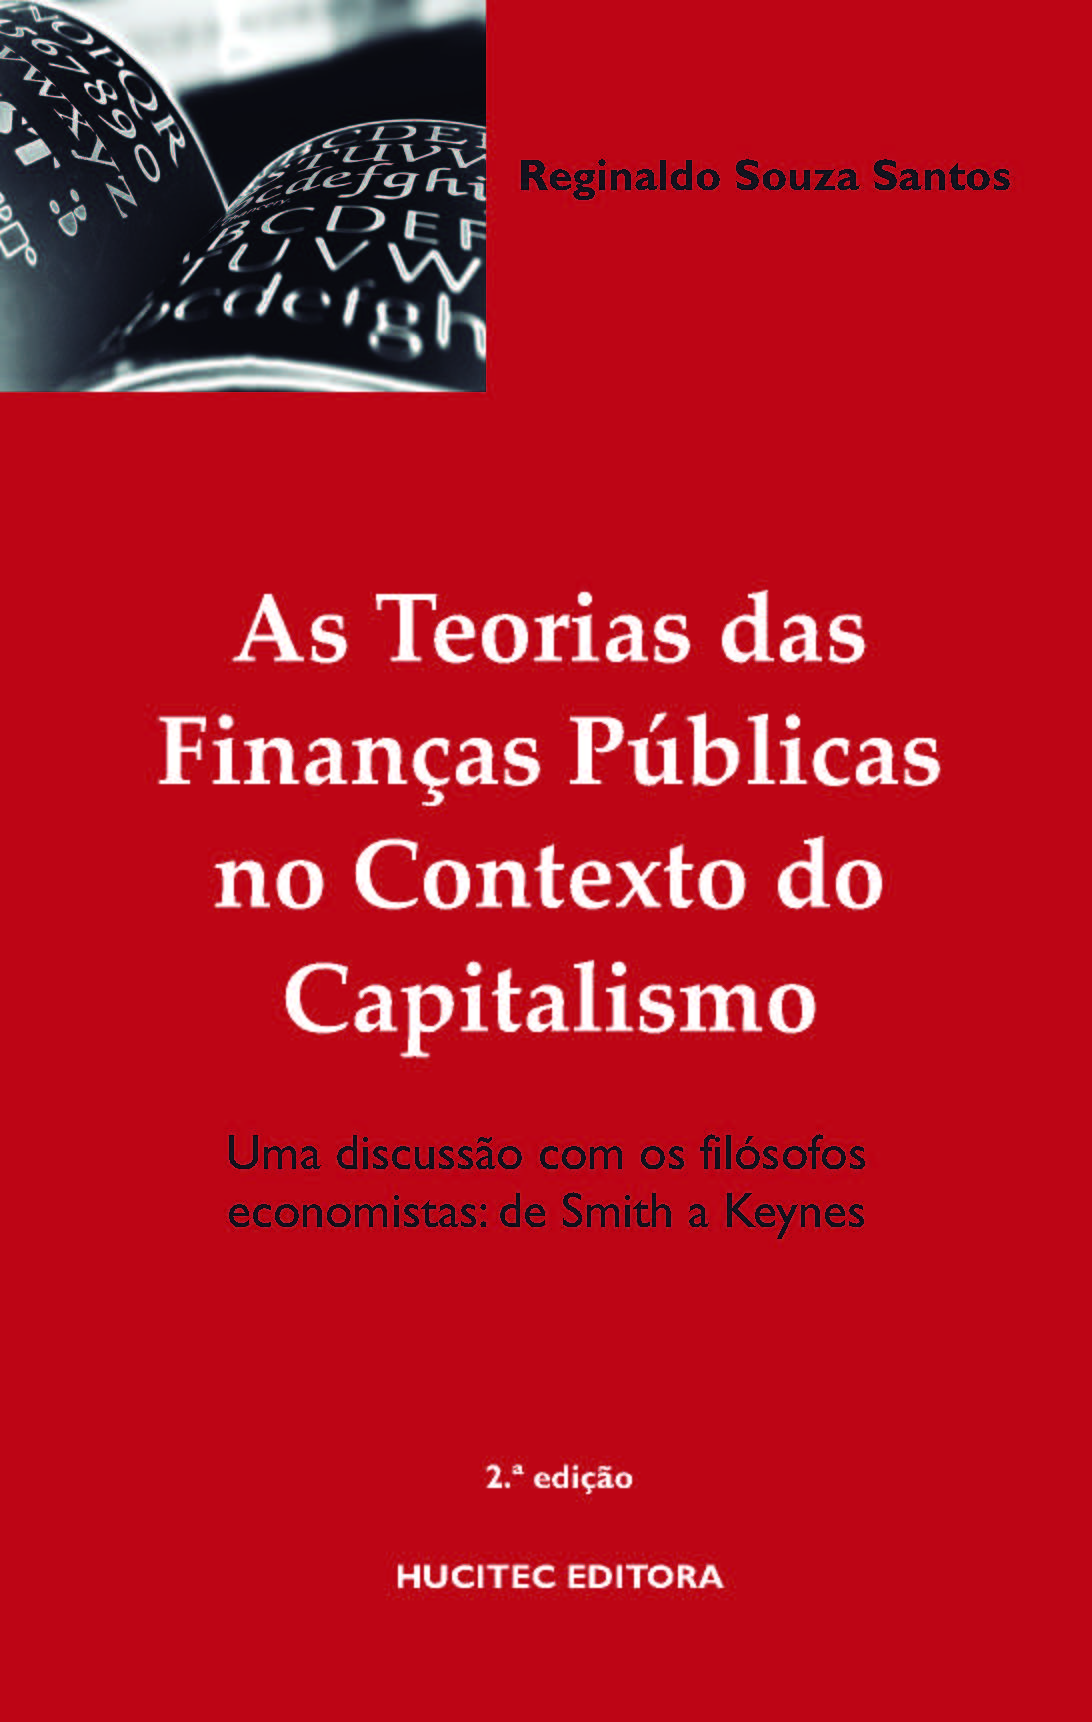 As Teorias das finanças públicas no contexto do capitalismo. Uma Discussão com os Filósofos Economistas: de Smith a Keynes  |  Reginaldo Souza Santos